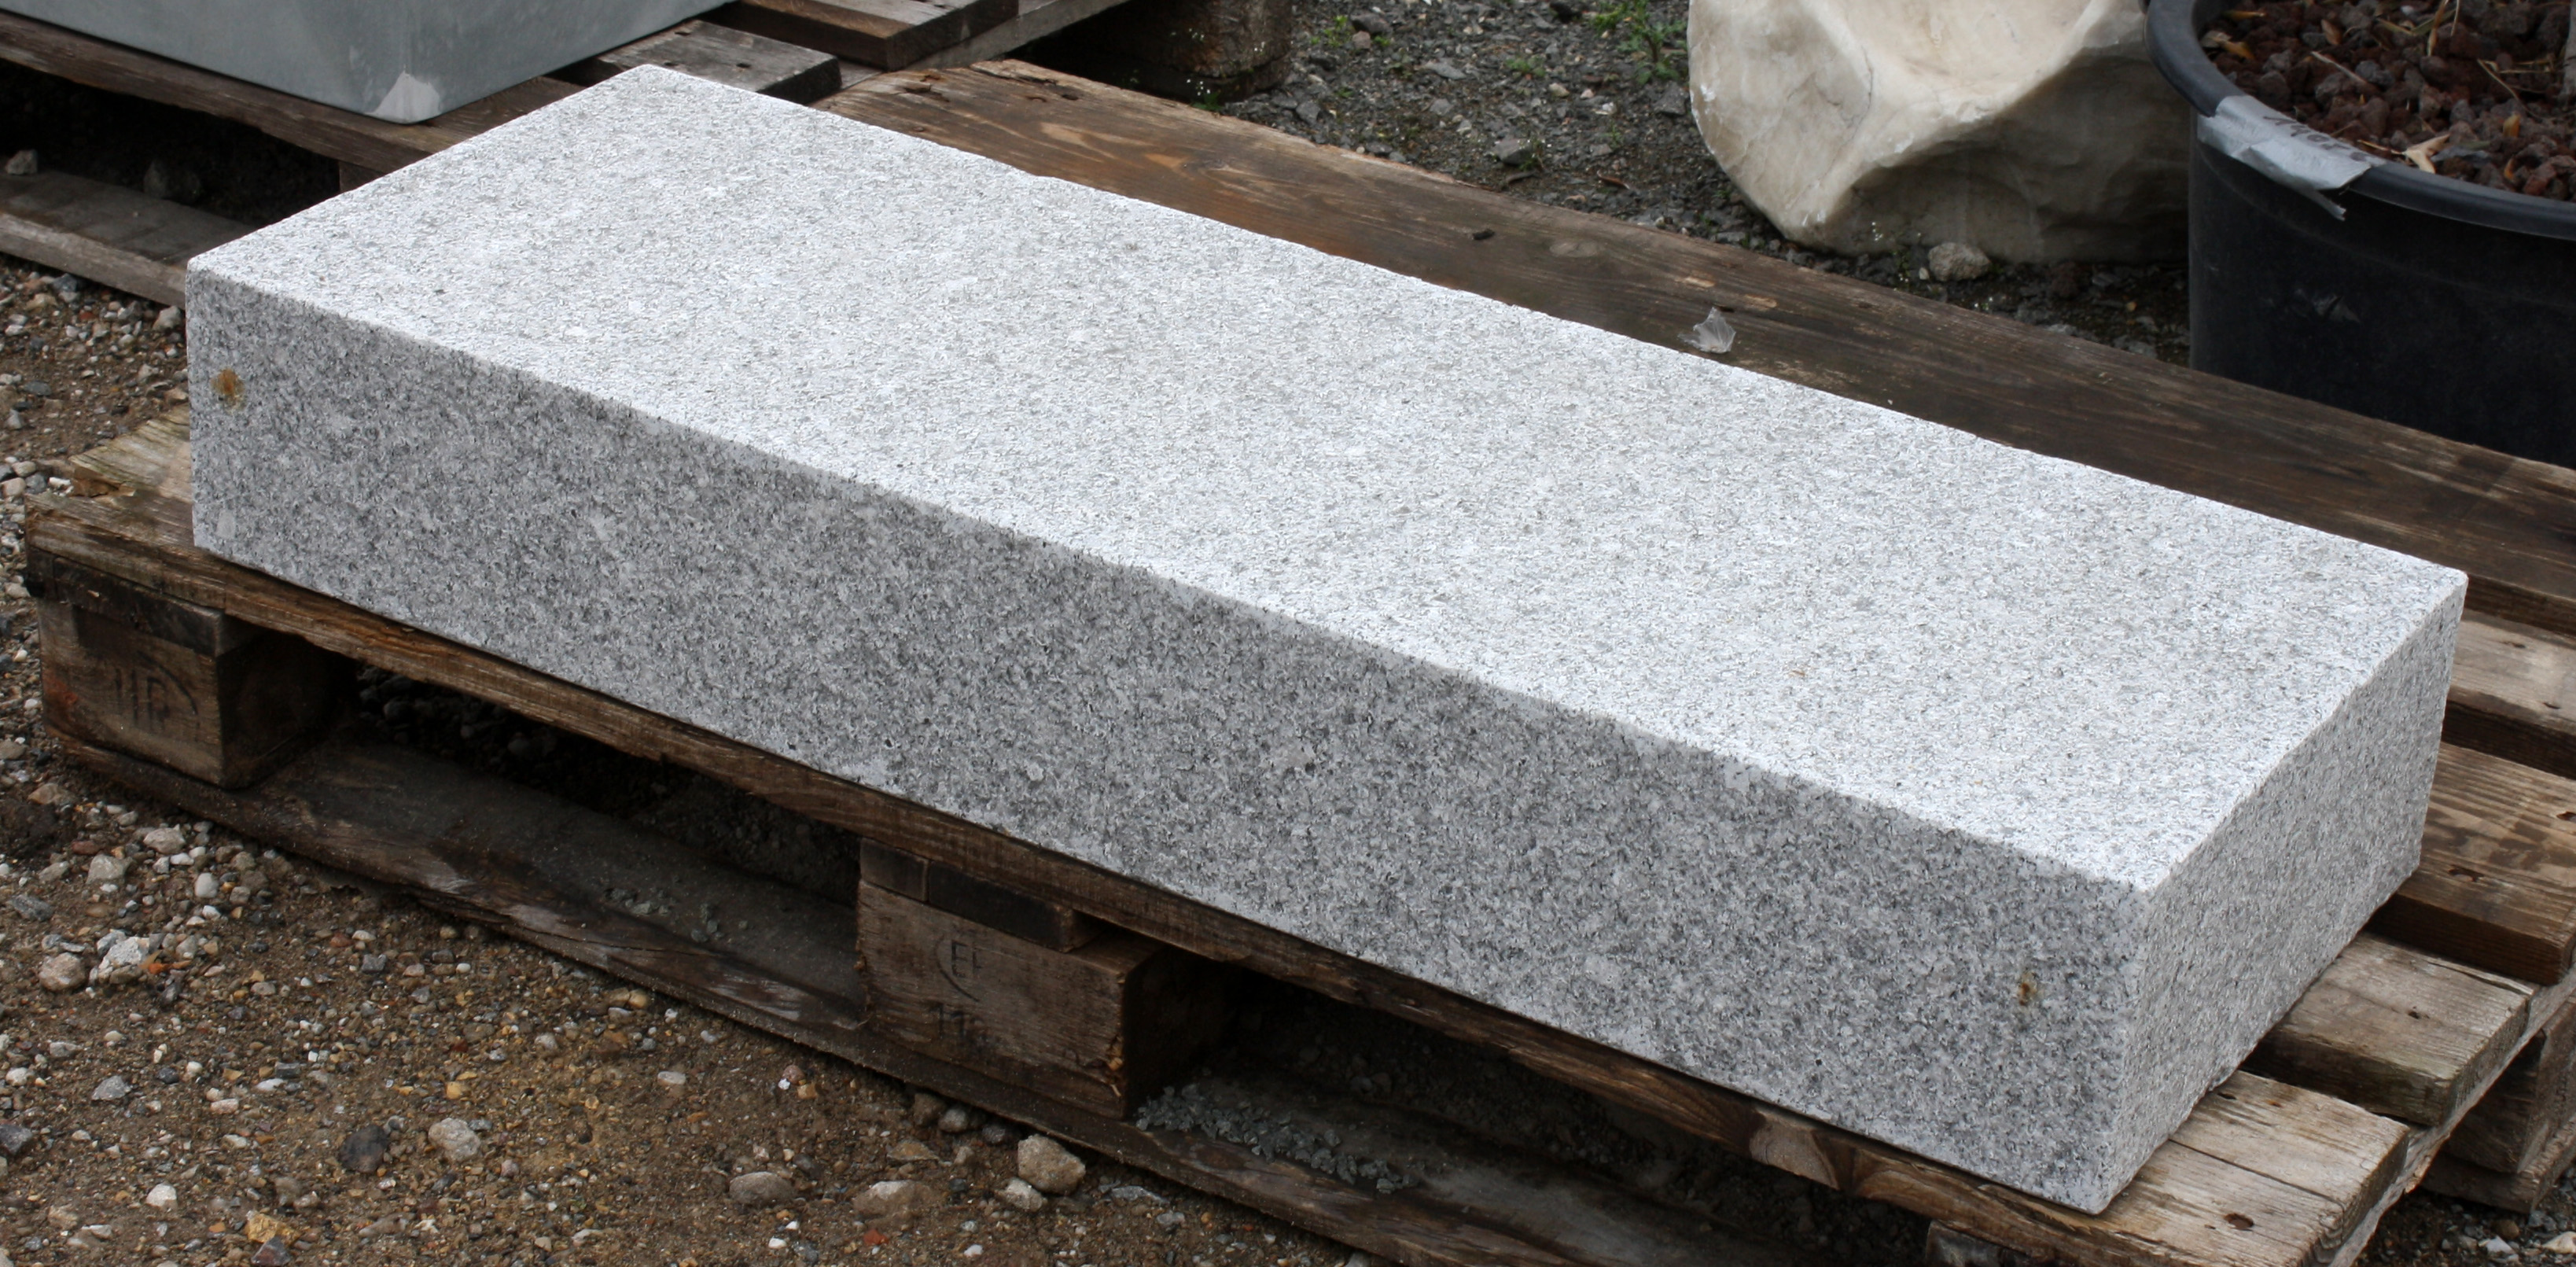 Blockstufe Naturstein Granit Grau Cristall feinkorn geflammt 100x35x15cm 